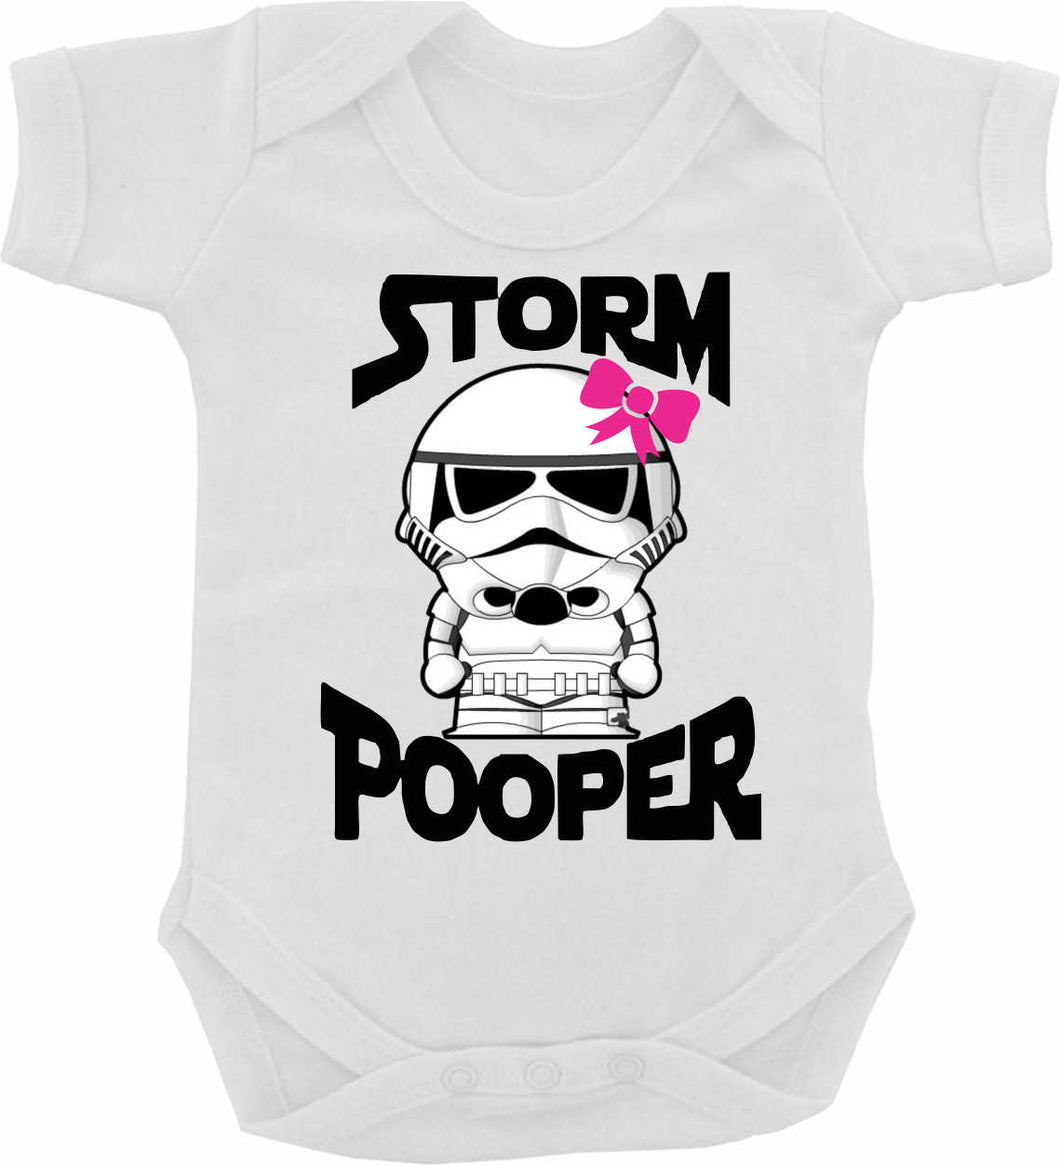 BABY: Storm Pooper Baby Grow